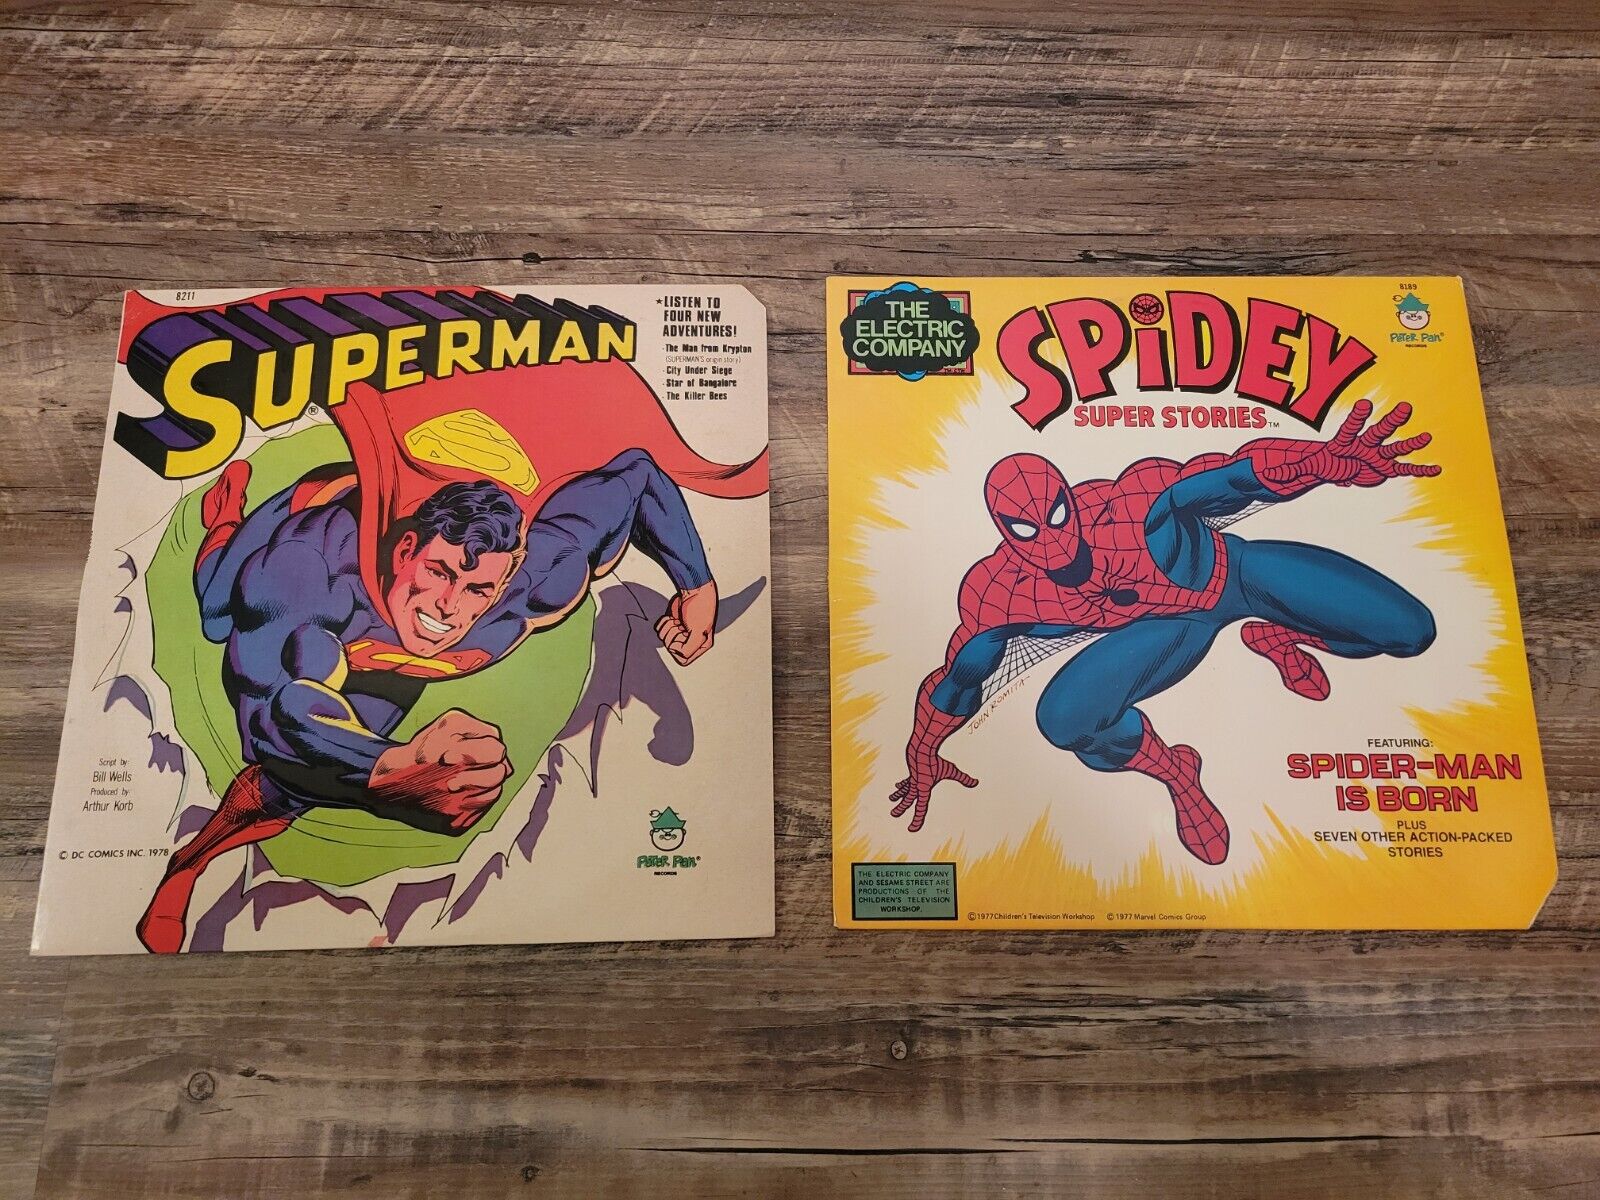  Peter Pan Records Records Bundle, Spiderman Super Stories / Superman Vinyl LP